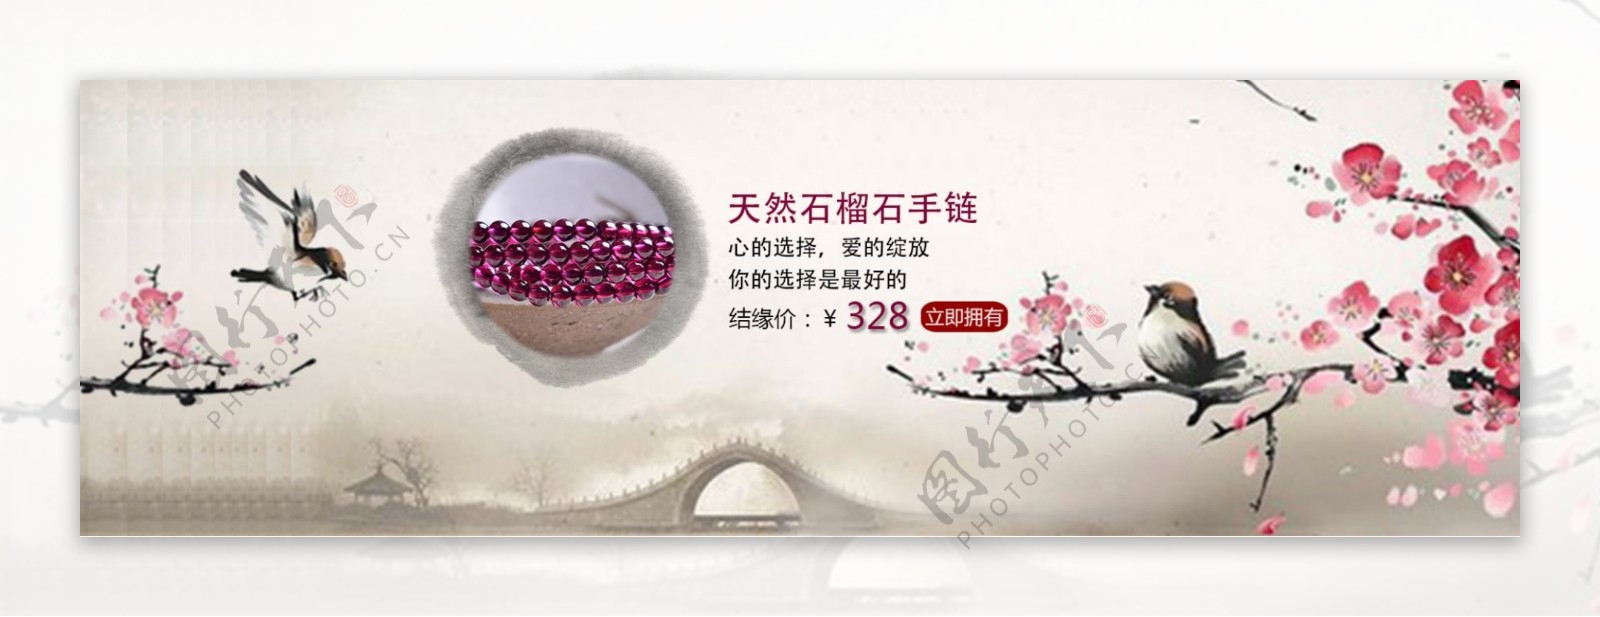 淘宝中国风手链海报设计PSD素材